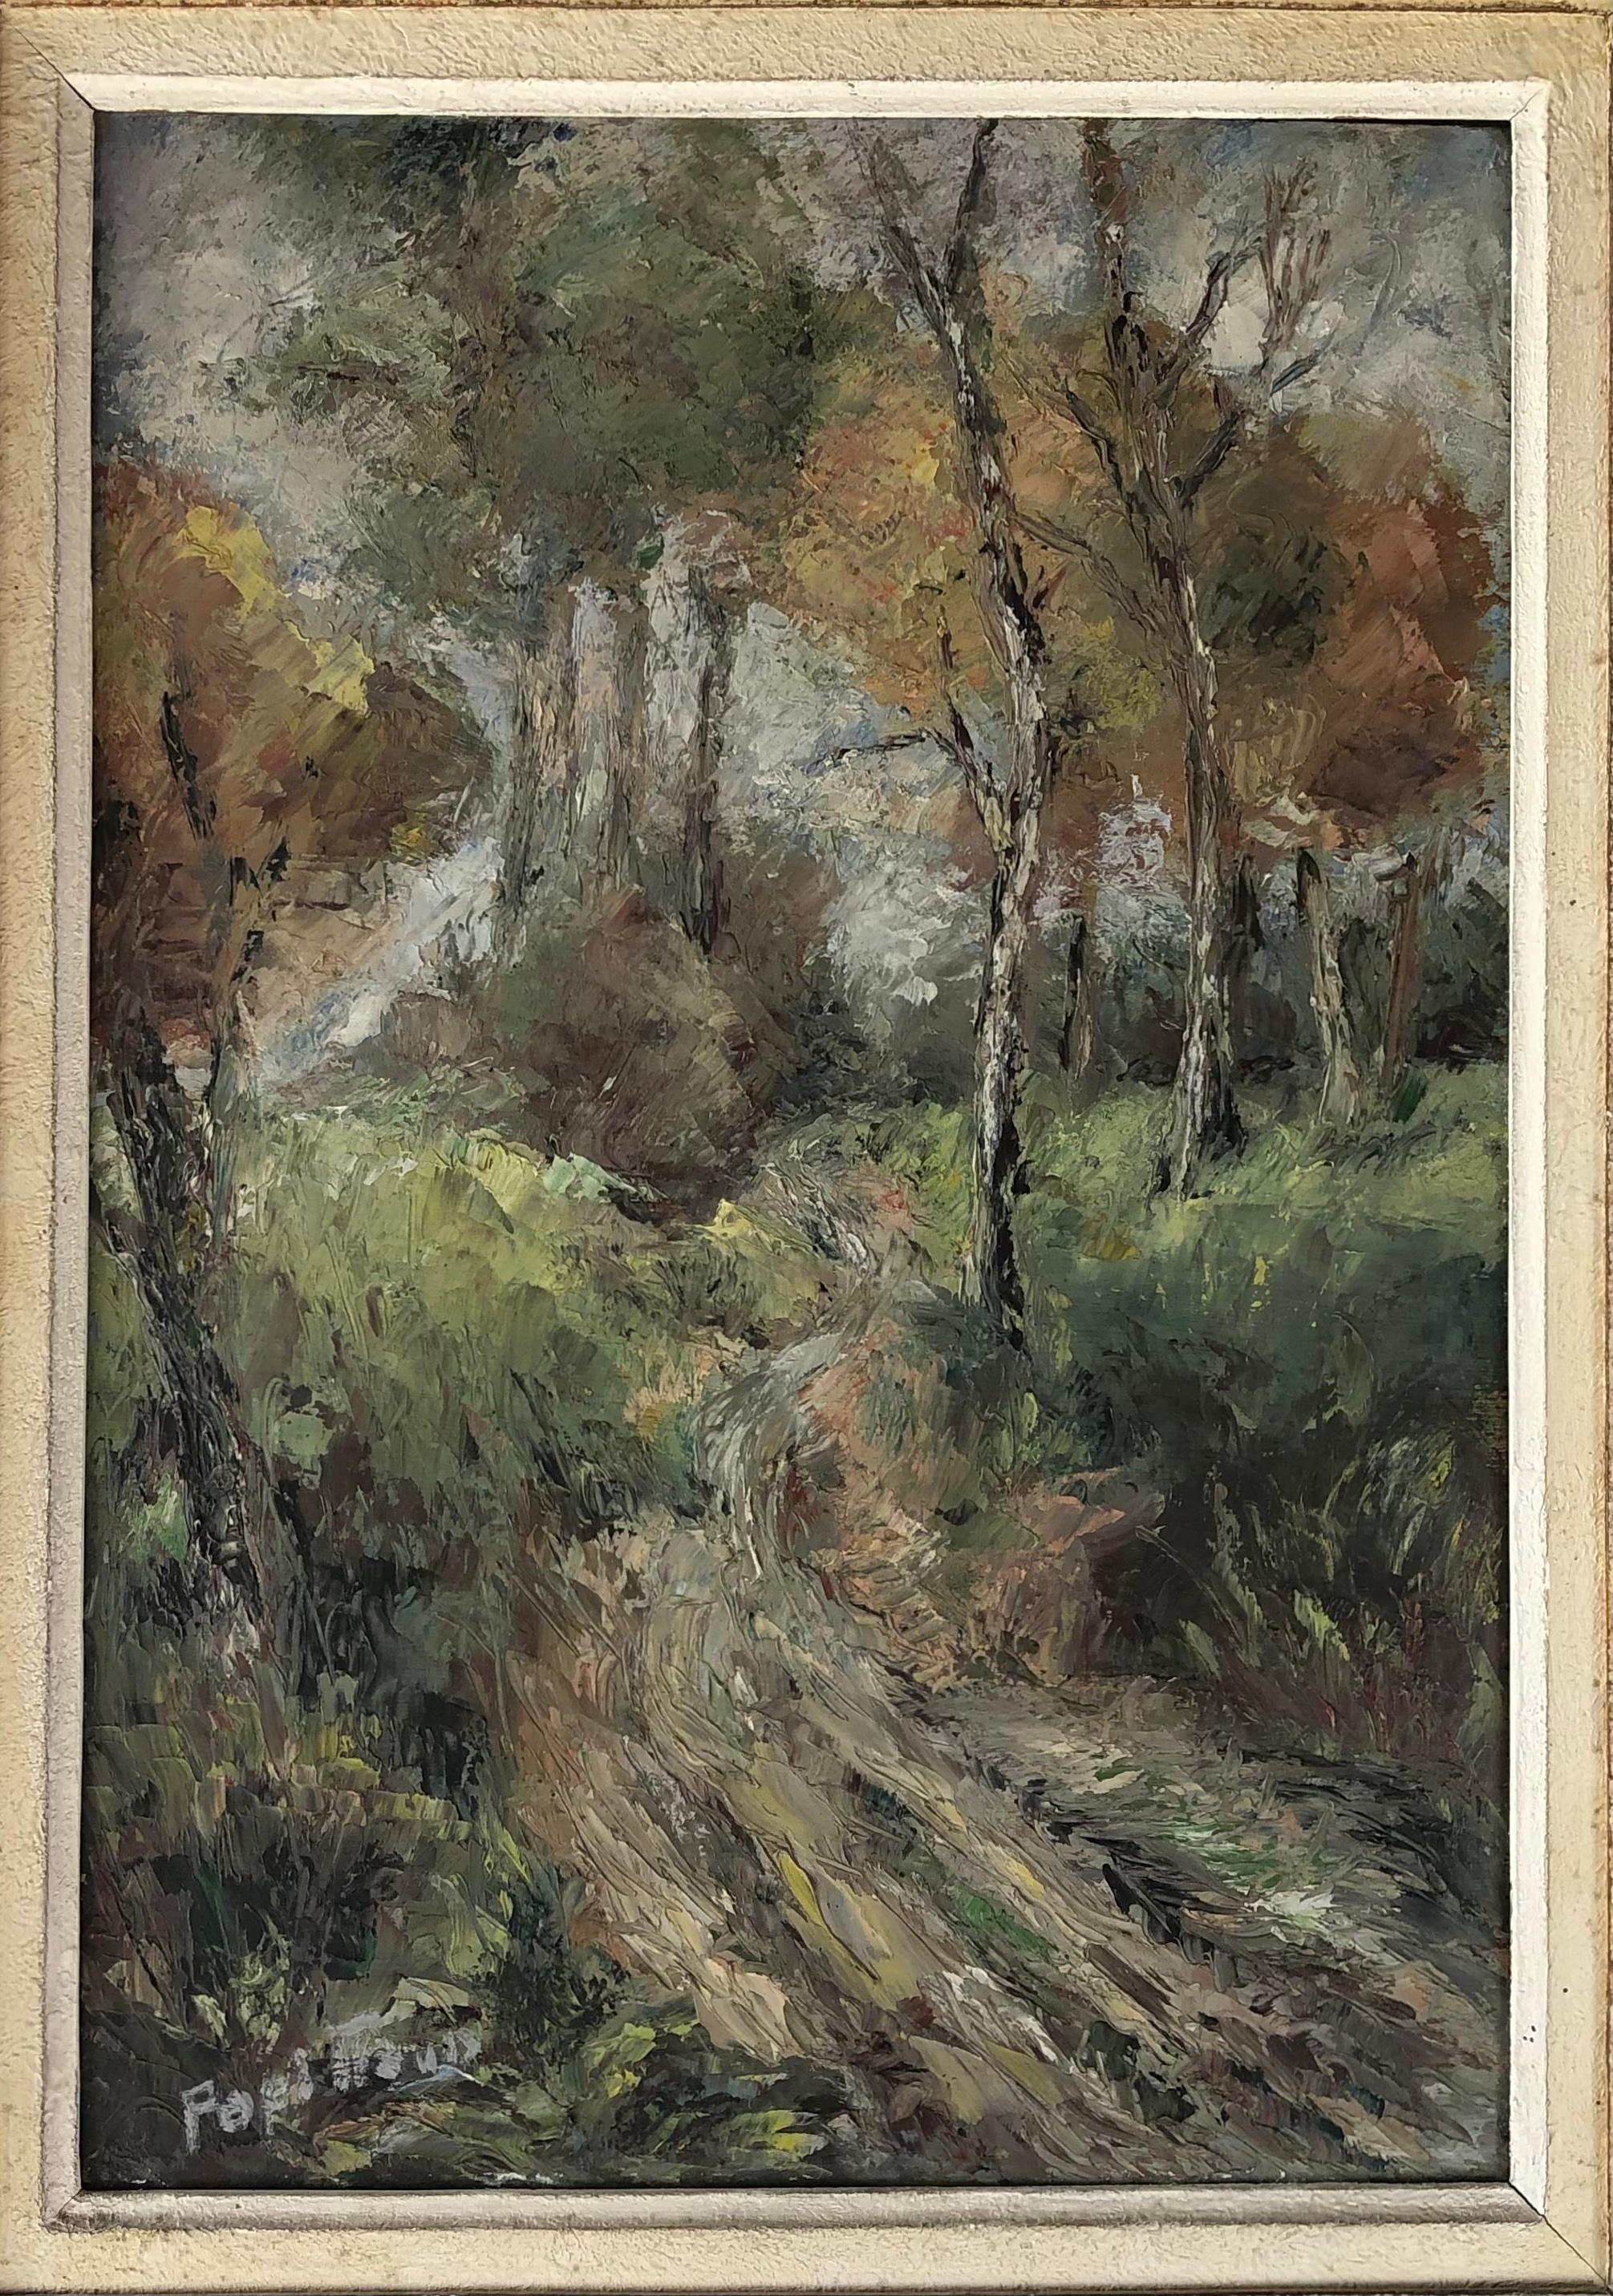 Une peinture à l'huile sur panneau représentant une scène de forêt de campagne par l'artiste peintre française Marcelle Papillaud. 

Marcelle PAPILLAUD est née en 1888, elle a peint de nombreuses œuvres d'art qui ont été vendues dans plusieurs